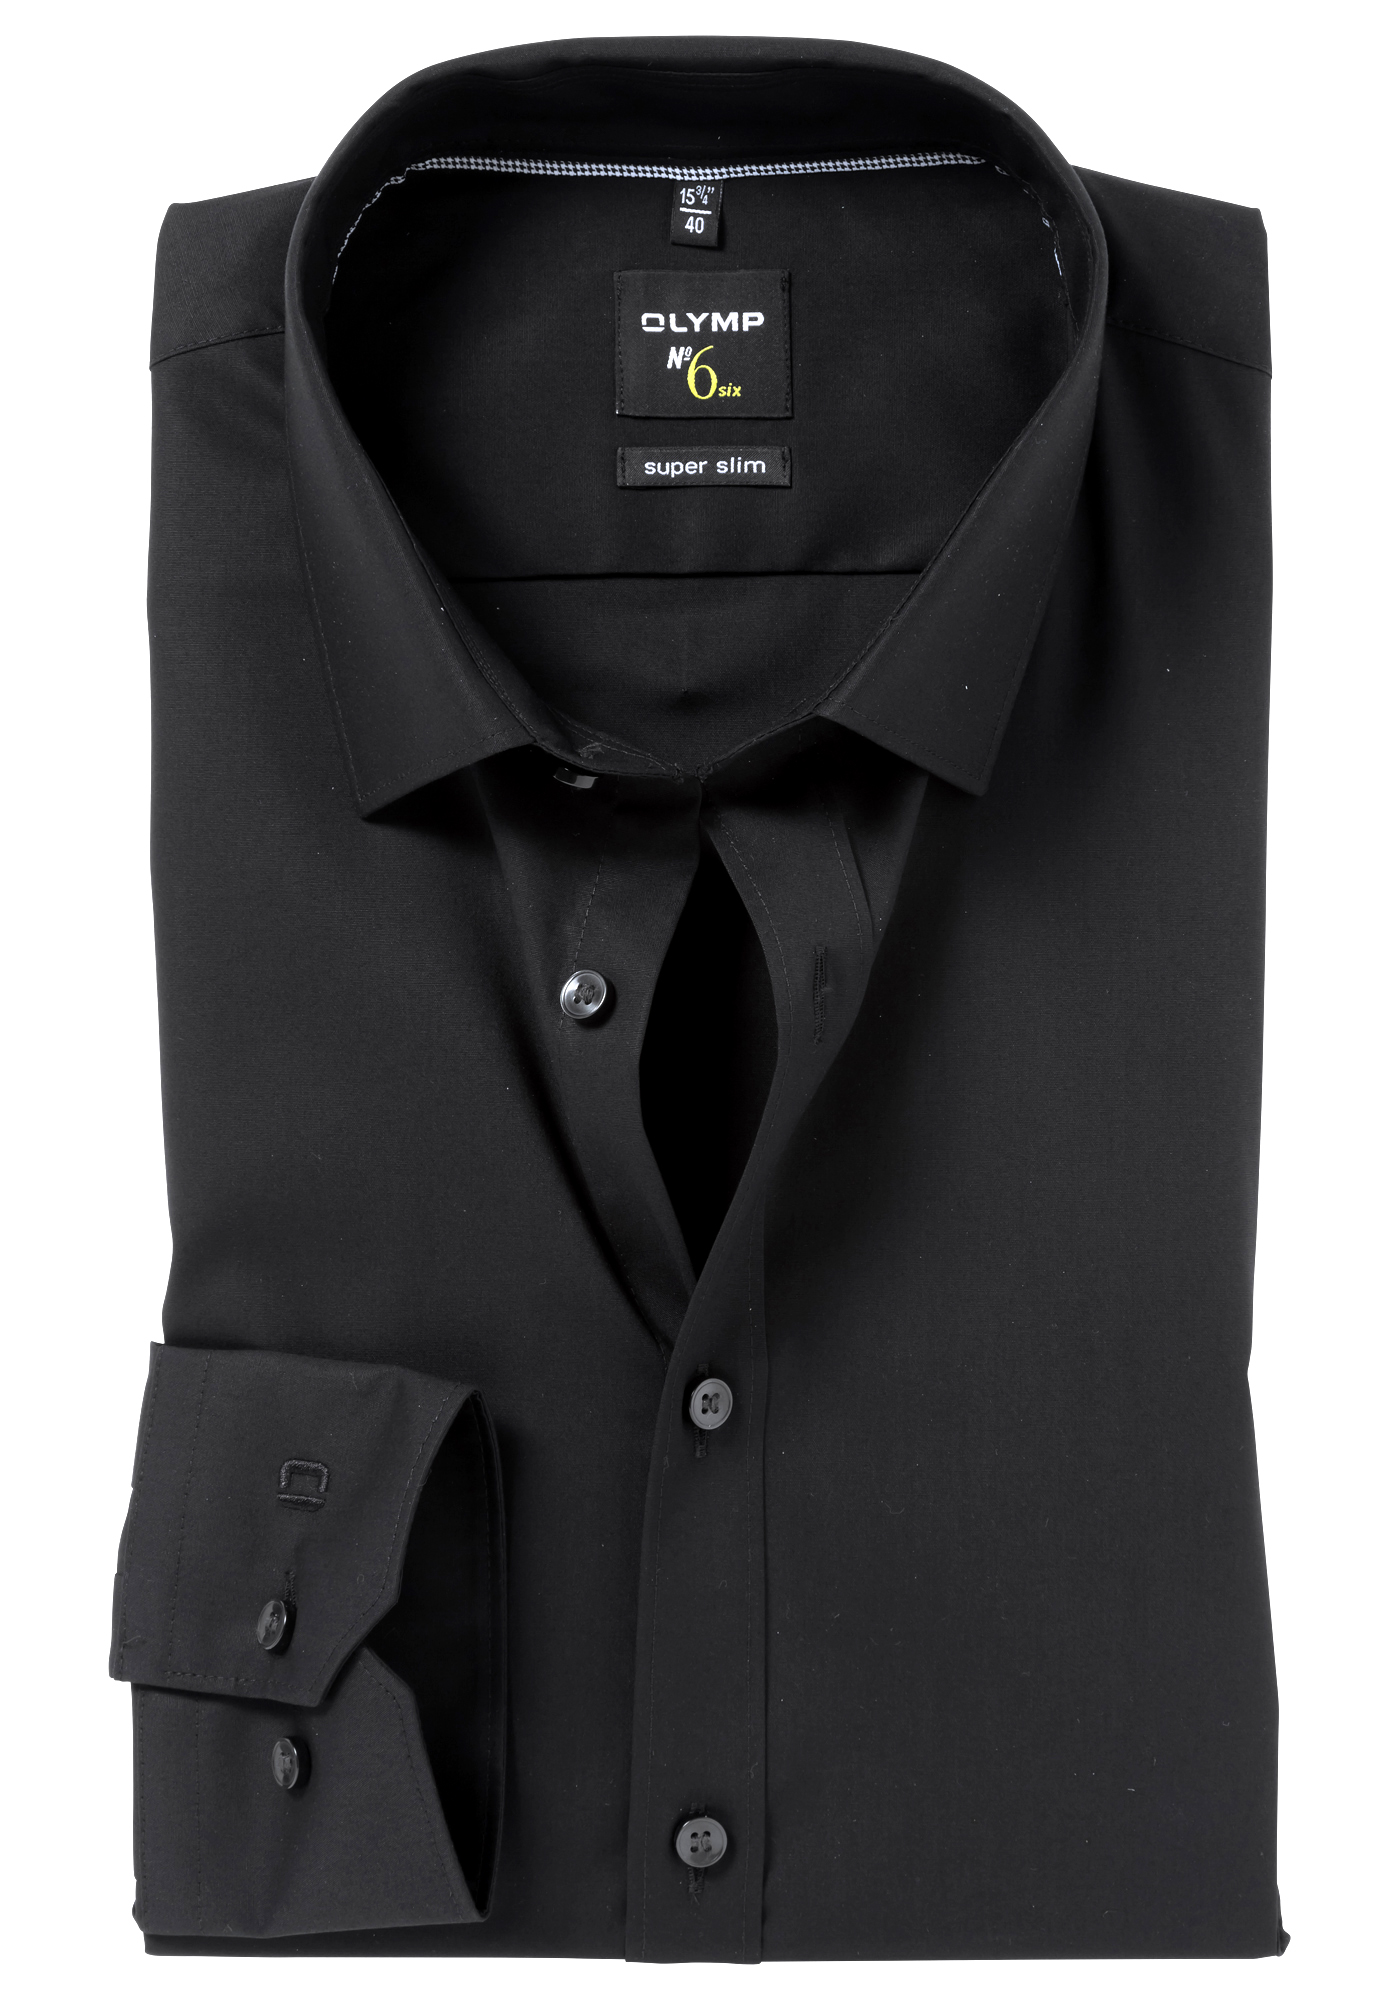 OLYMP No. Six super slim fit overhemd, zwart (met extra tailleringsnaden)